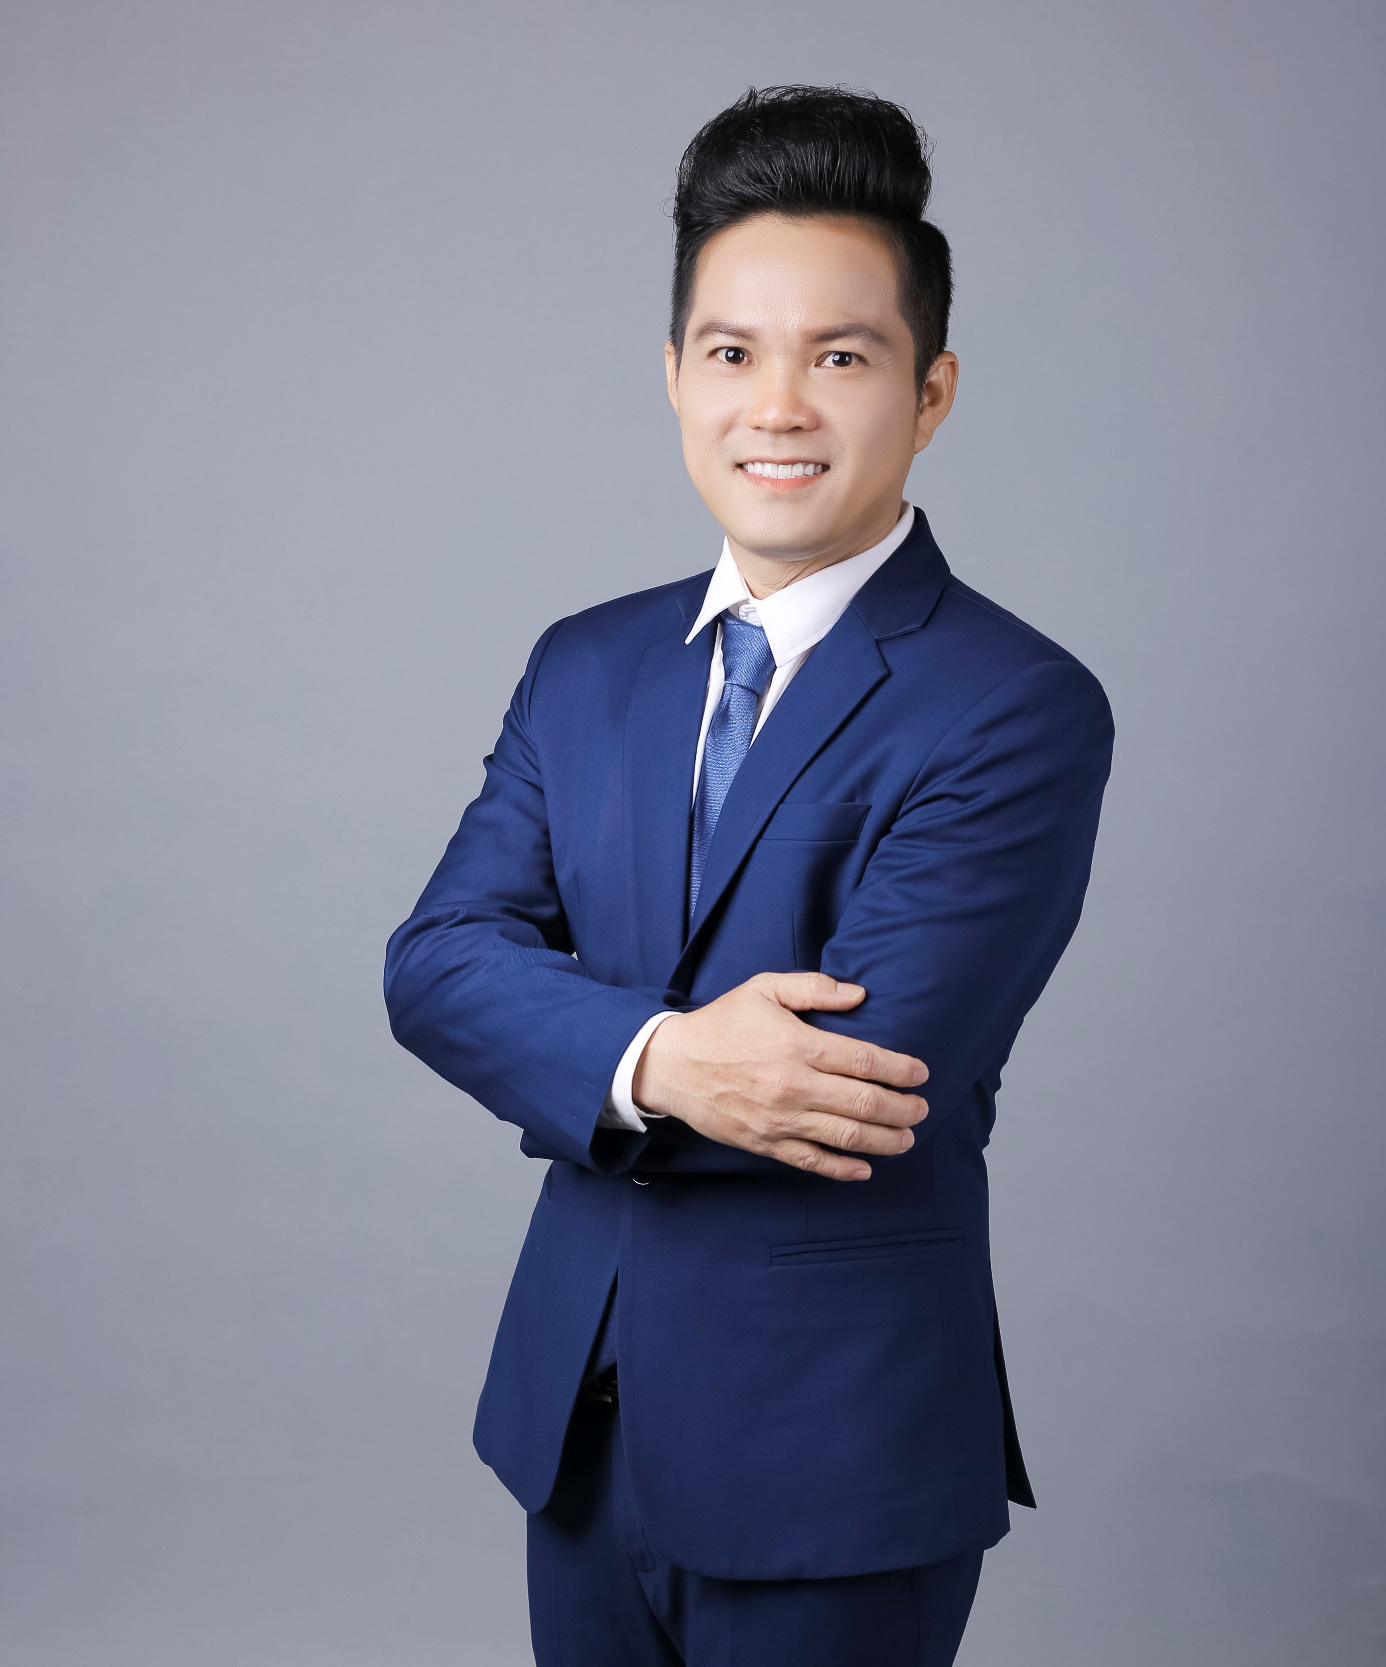 Ca sĩ Lương Minh Đạt bắt tay cùng với ekip chuẩn bị các ca khúc chào xuân Tân Sửu 2021 - Ảnh 5.